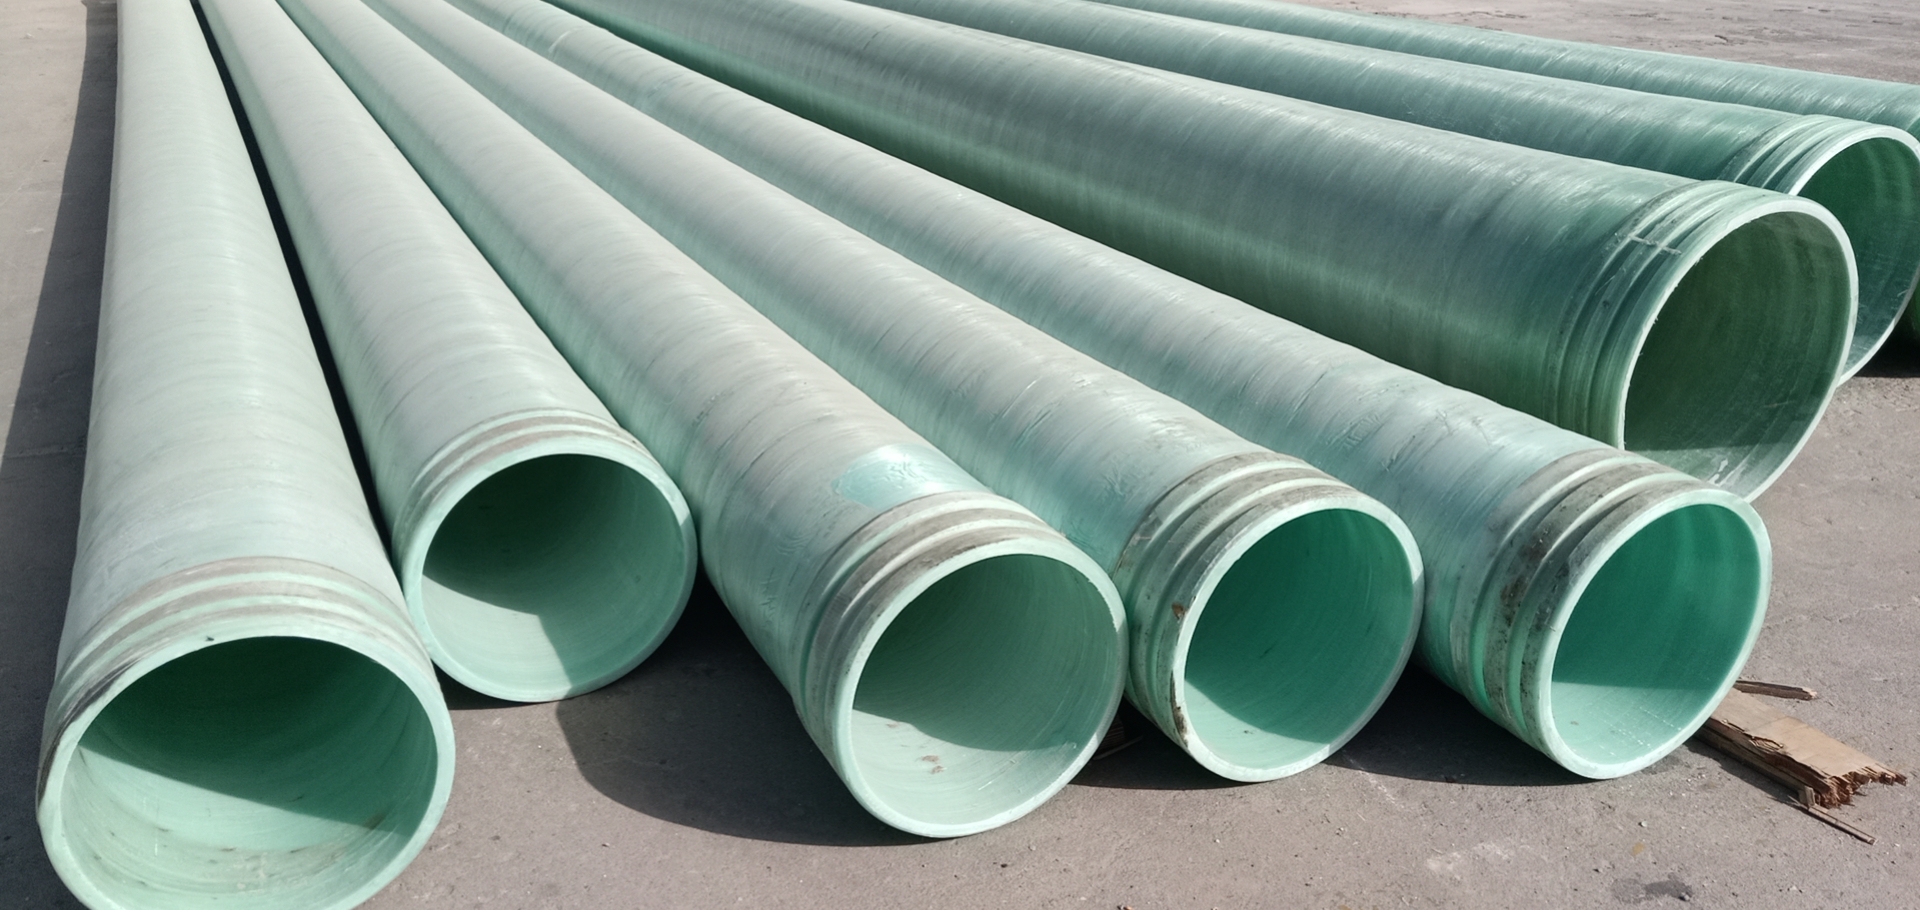 优质生产玻璃钢管|夹砂管|脱硫管|电缆管选河北联益玻璃钢有限公司 玻璃钢管|夹砂管工艺管|电缆管